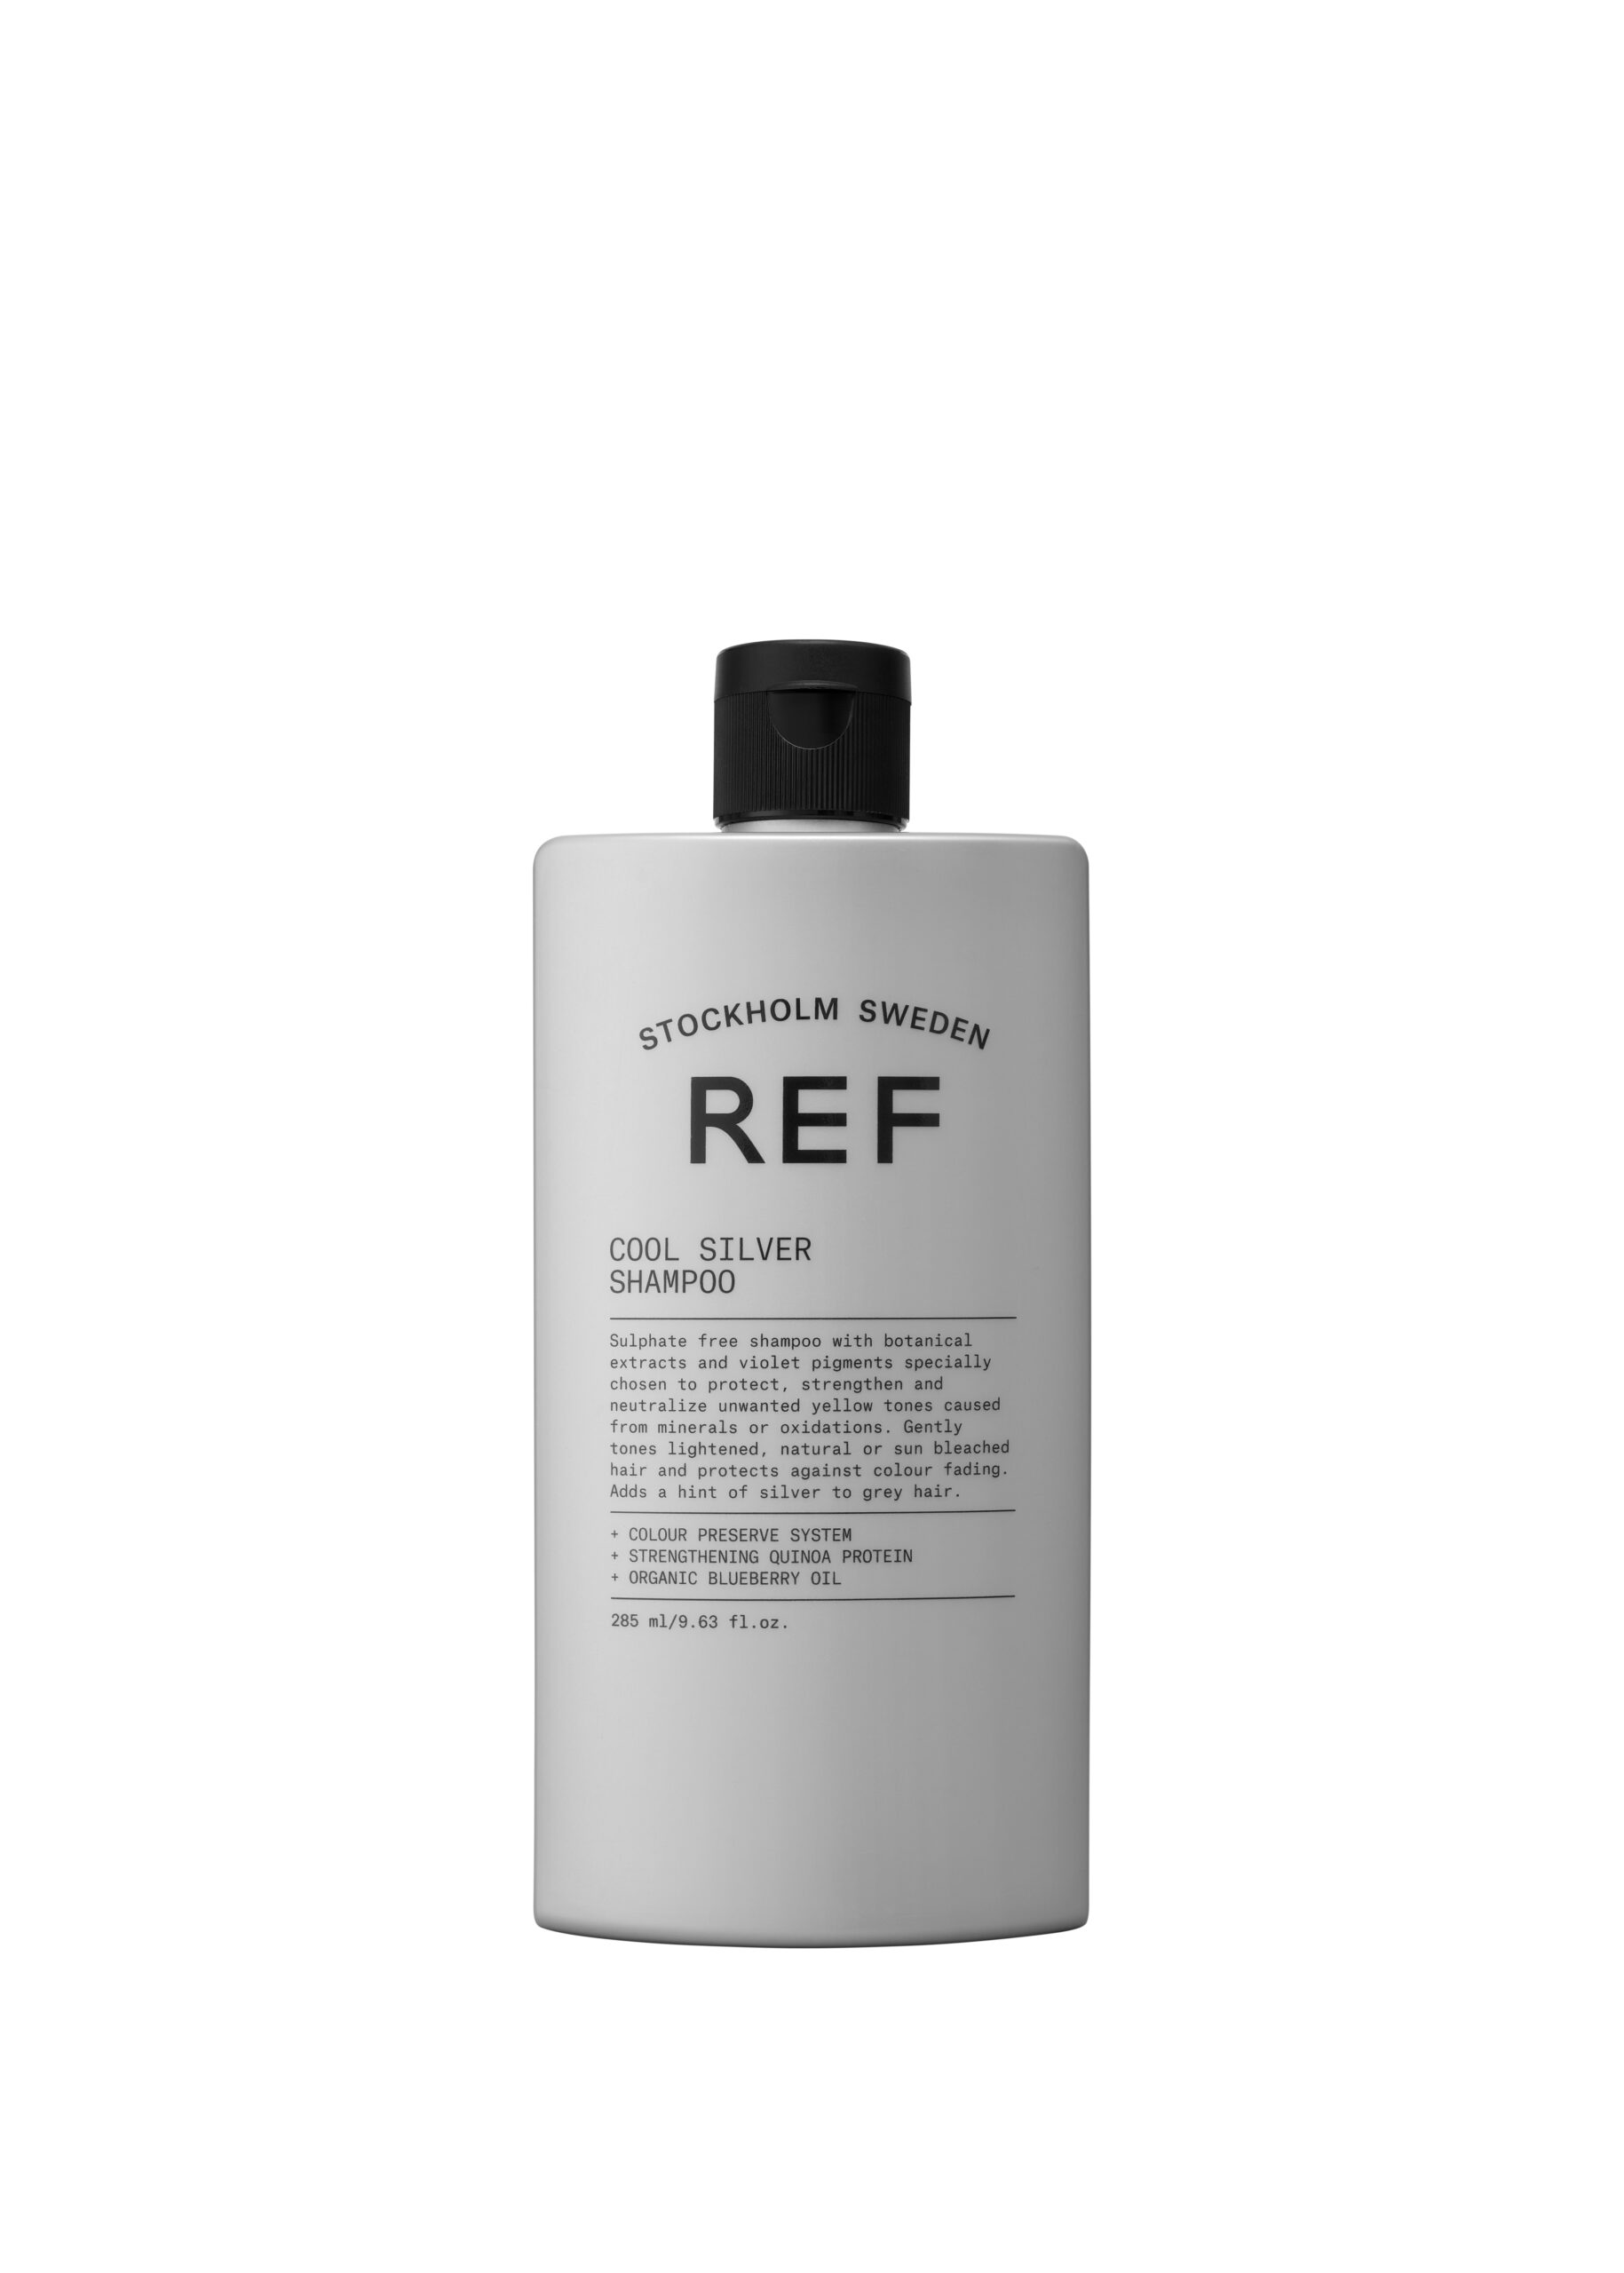 Klik om REF naar cool silver shampoo te gaan